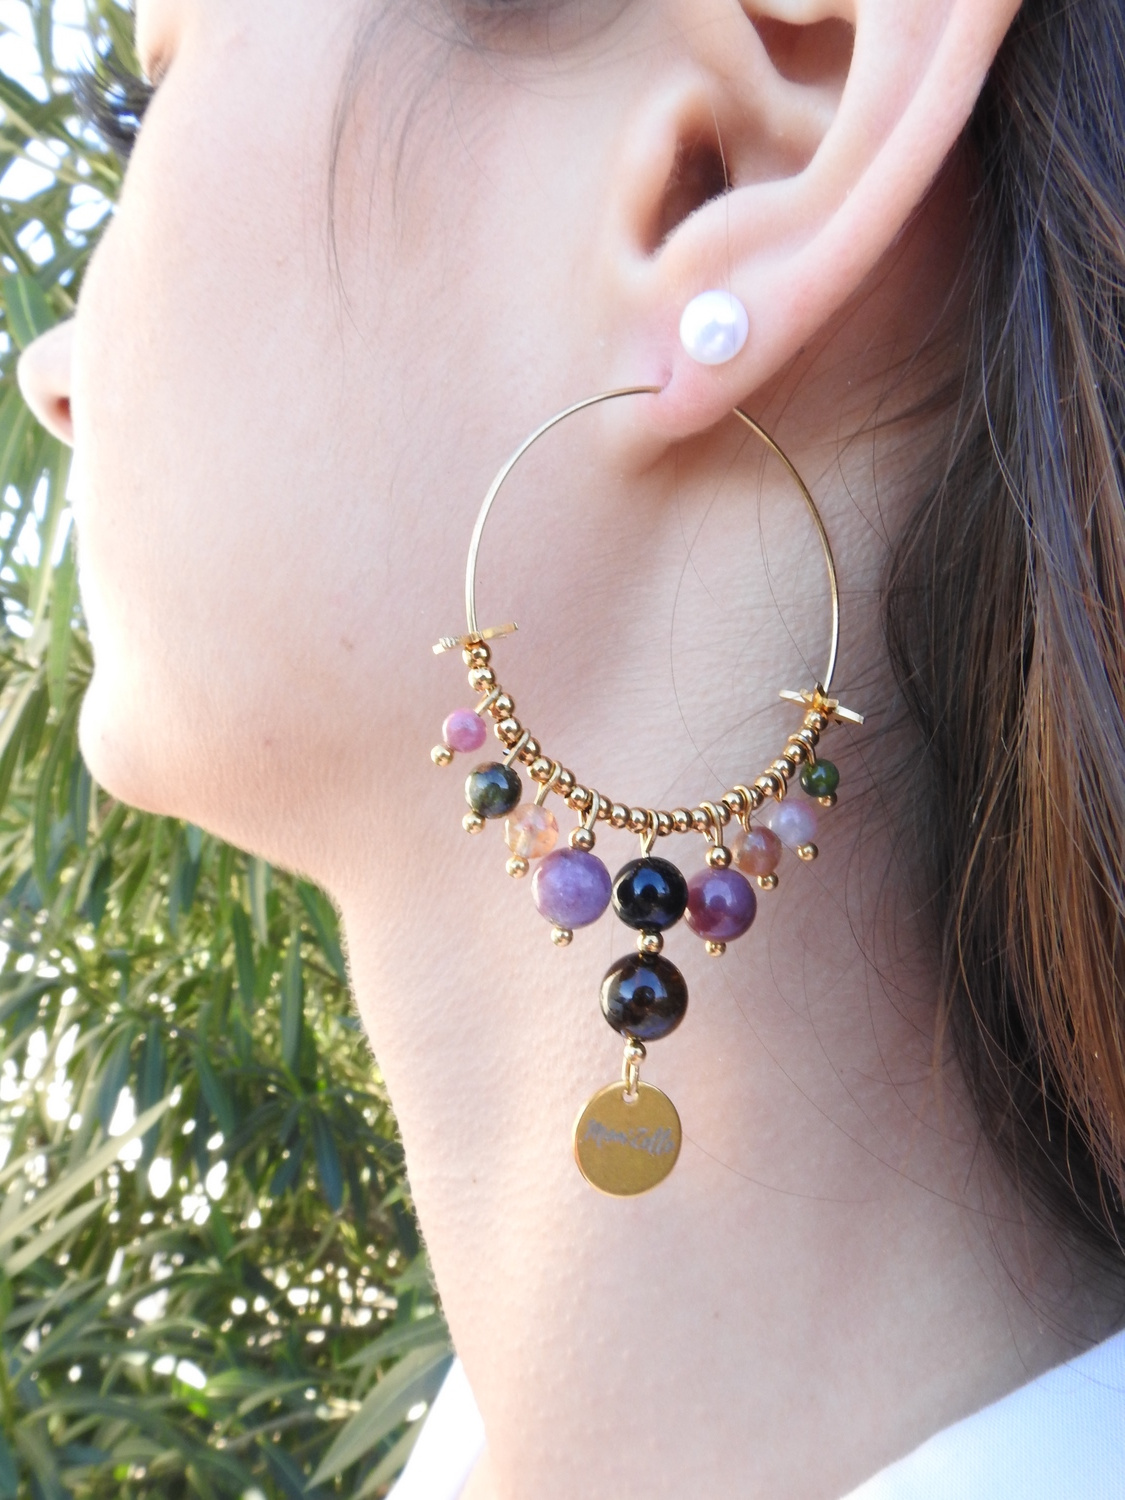 Boucles d’oreilles stylées ARCO IRIS by MomZelle ornées de pierres fines et perles dorées « rose des vents » MMC050